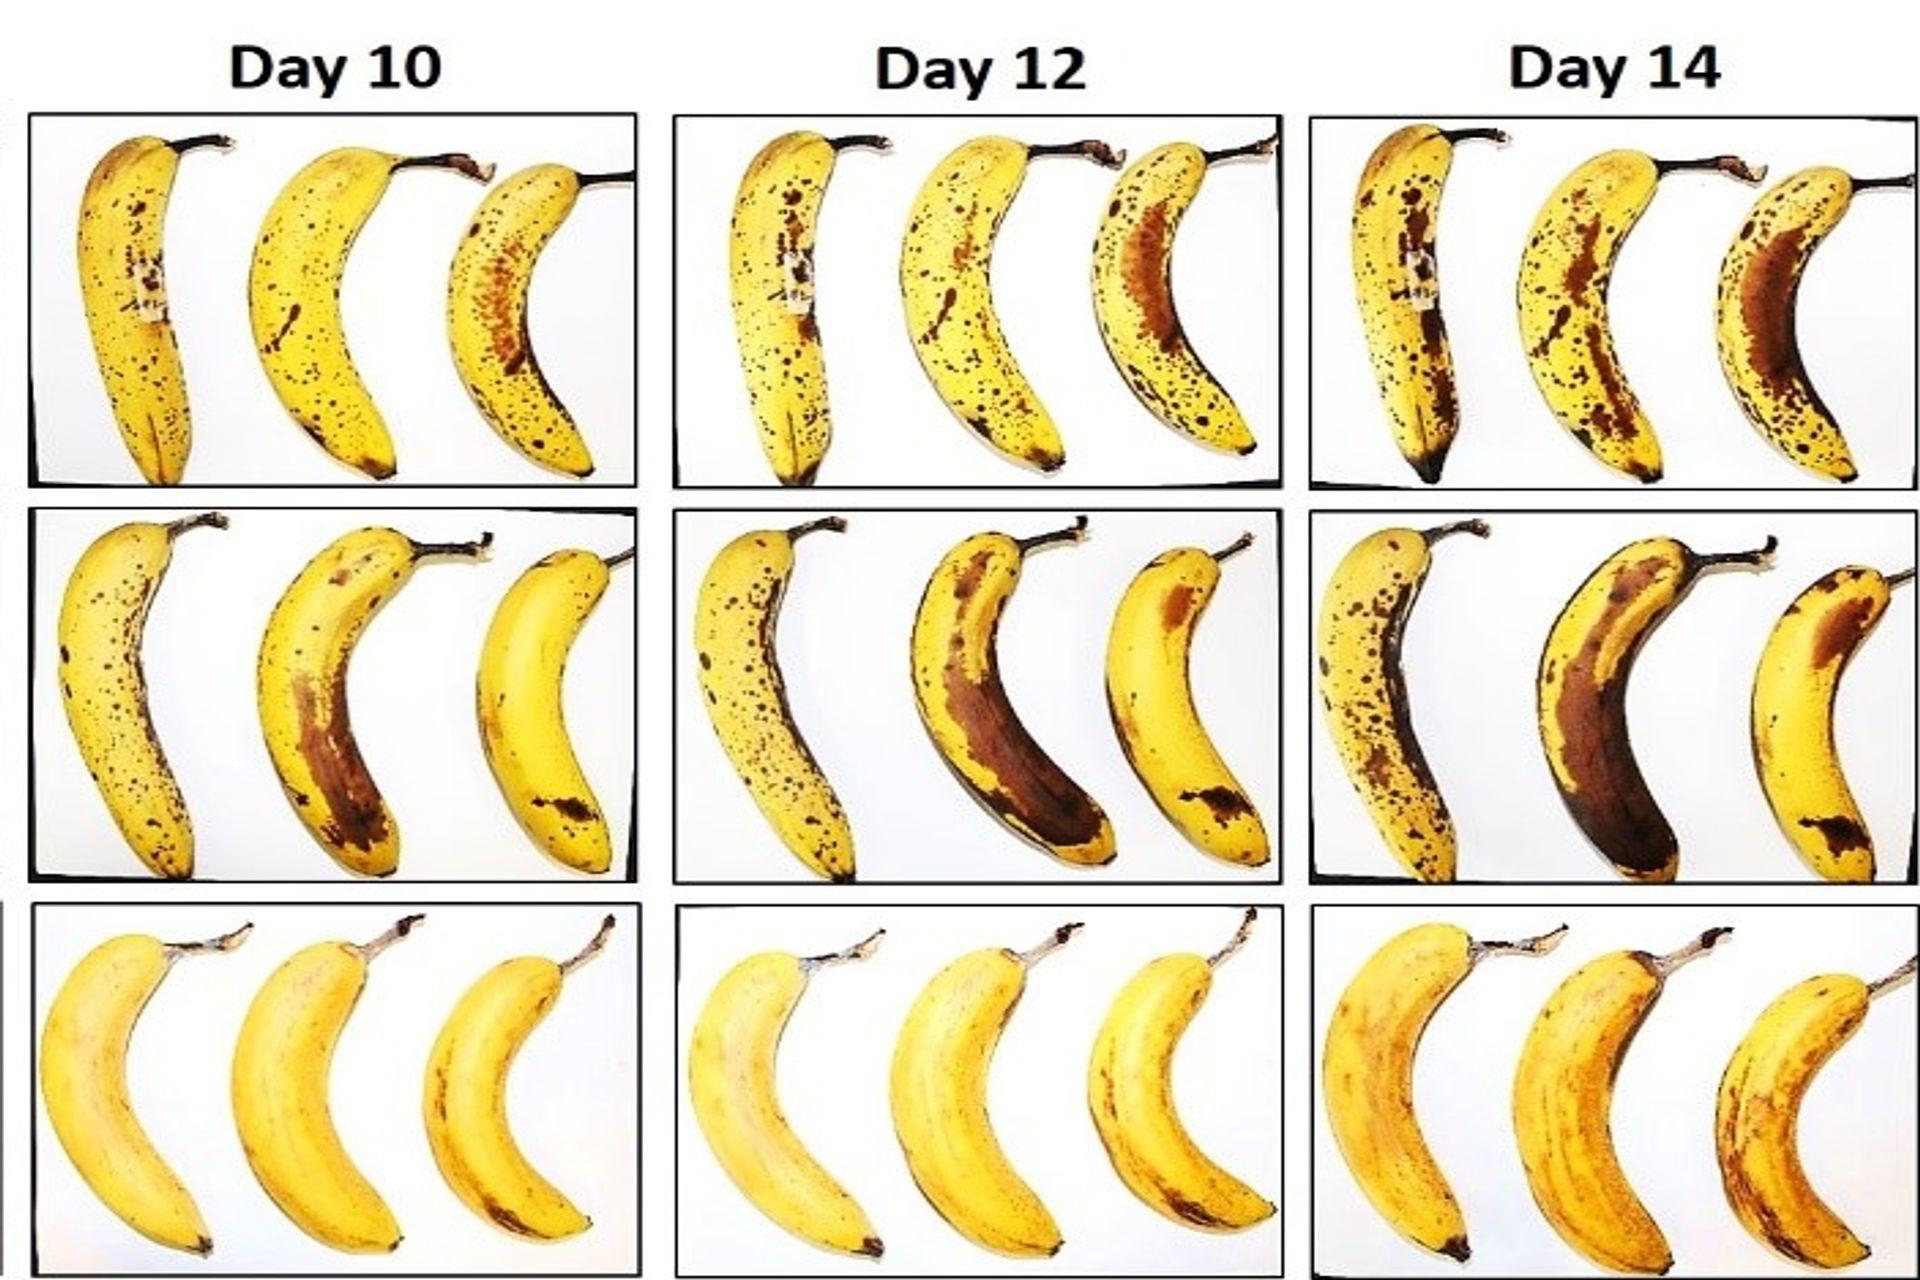 Tri banane koje su EMPA i Lidl Švicarska podvrgnule testu konzervacije sa i bez omotača od vlaknaste celuloze nakon 10, 12 i 14 dana